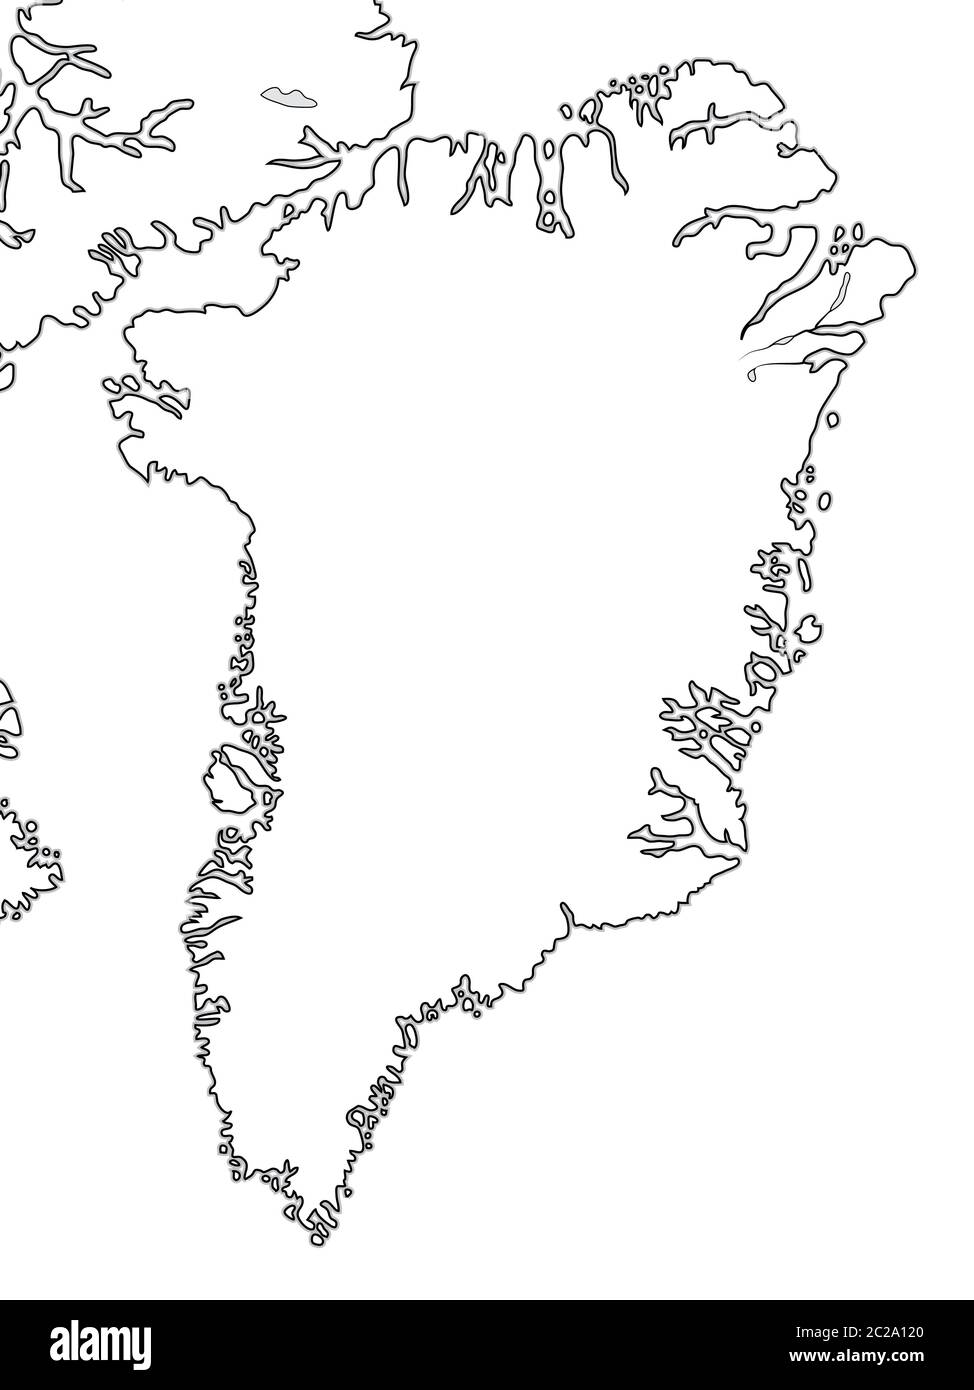 Carte mondiale du GROENLAND : Groenland, archipel Arctique, océan Atlantique. Carte géographique. Banque D'Images